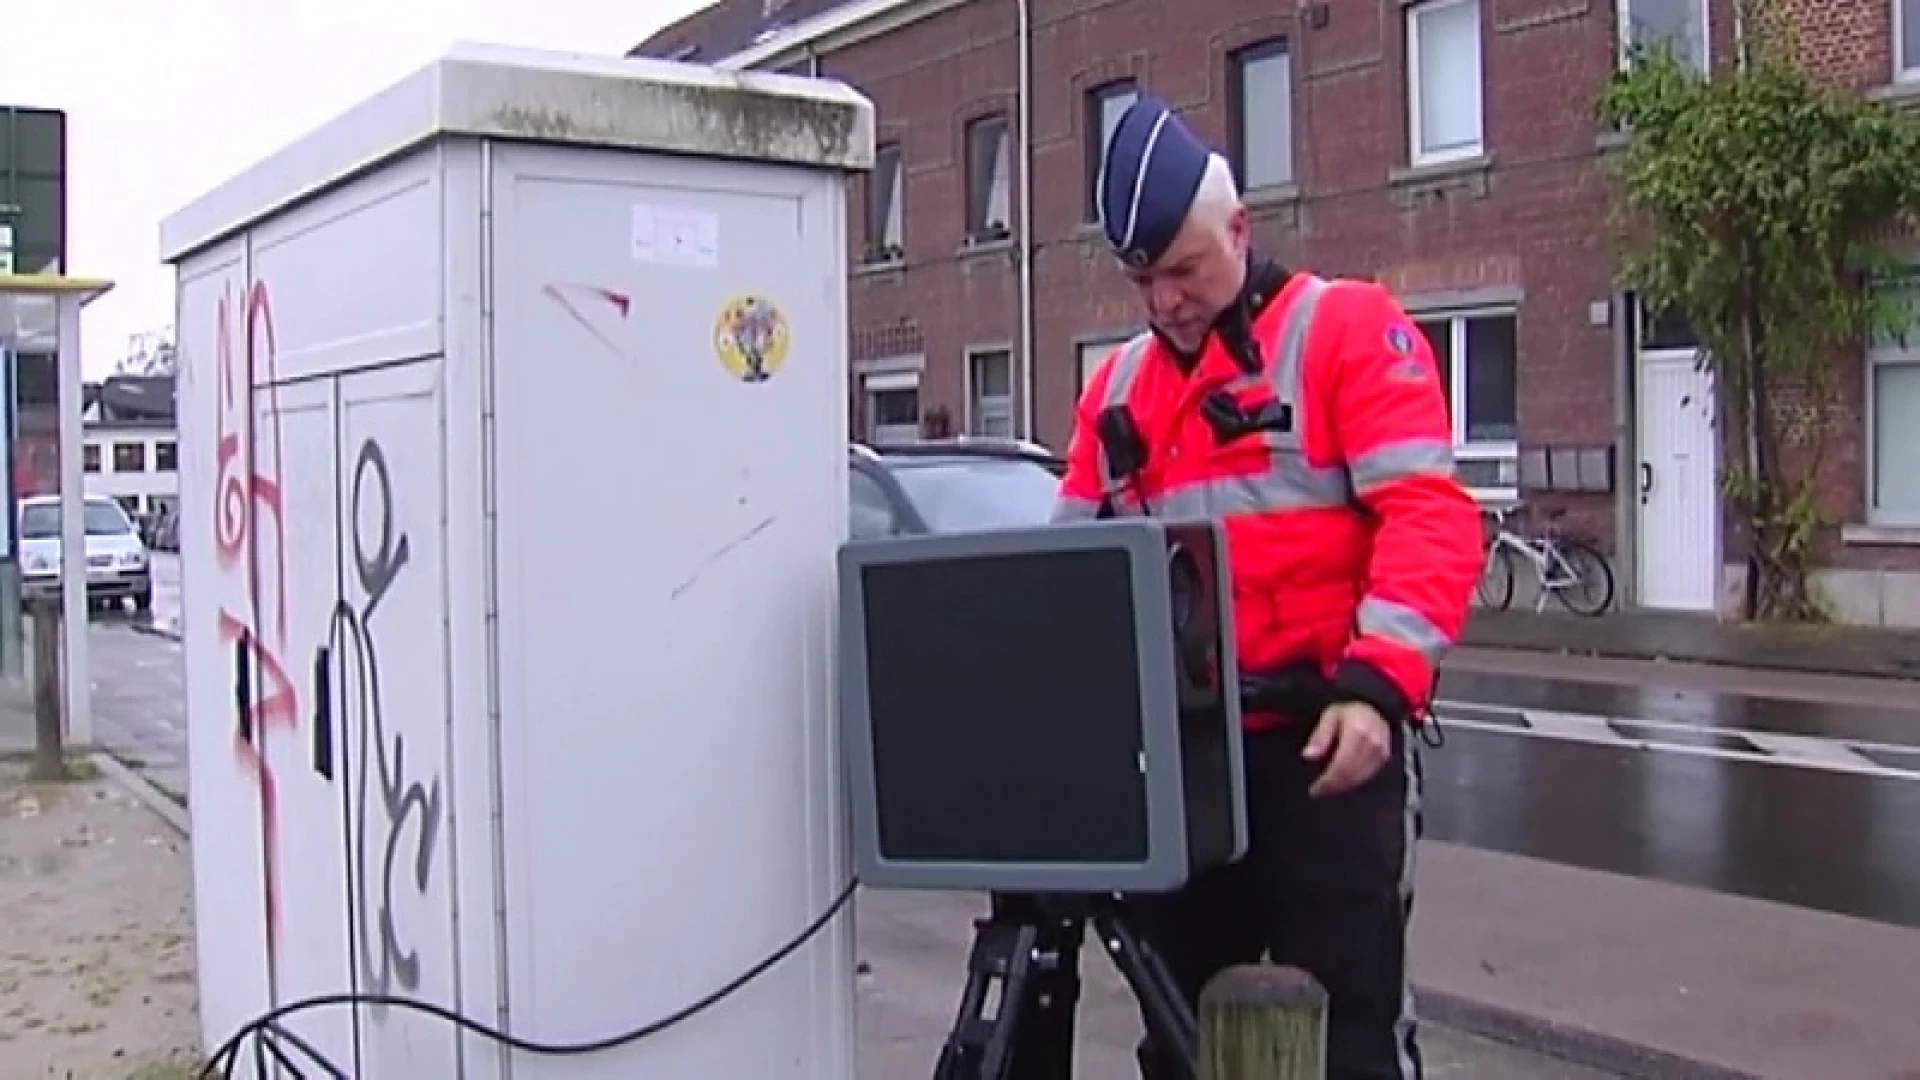 Politie Leuven wil met nieuwe hypermobiele flitscamera hardrijders in zone 30 aanpakken